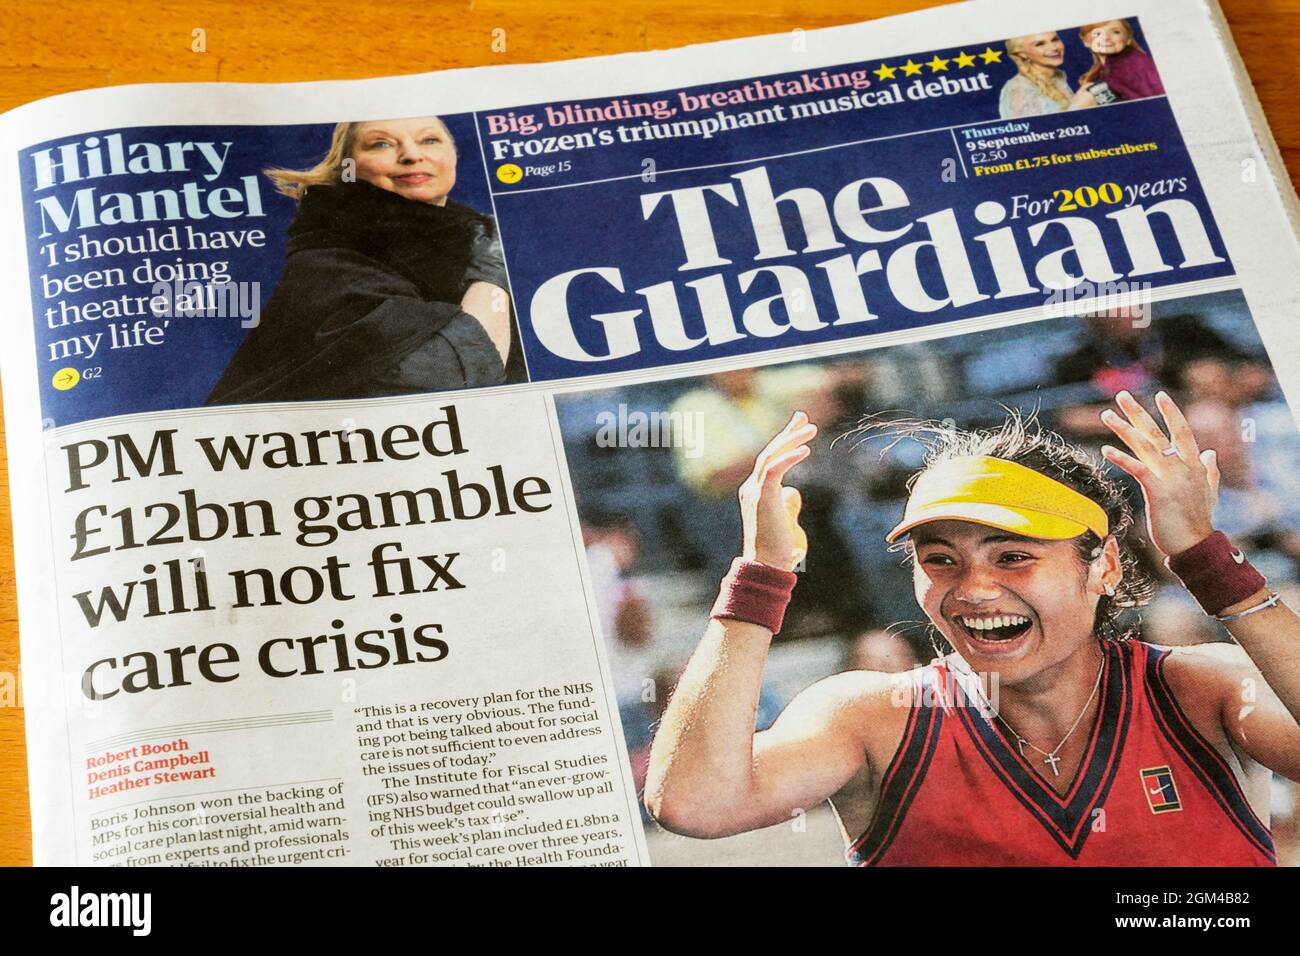 La portada del periódico Guardian del 9 de septiembre de 2021 dice que PM advirtió que el juego de 12bn libras no solucionará la crisis del cuidado. Foto de stock